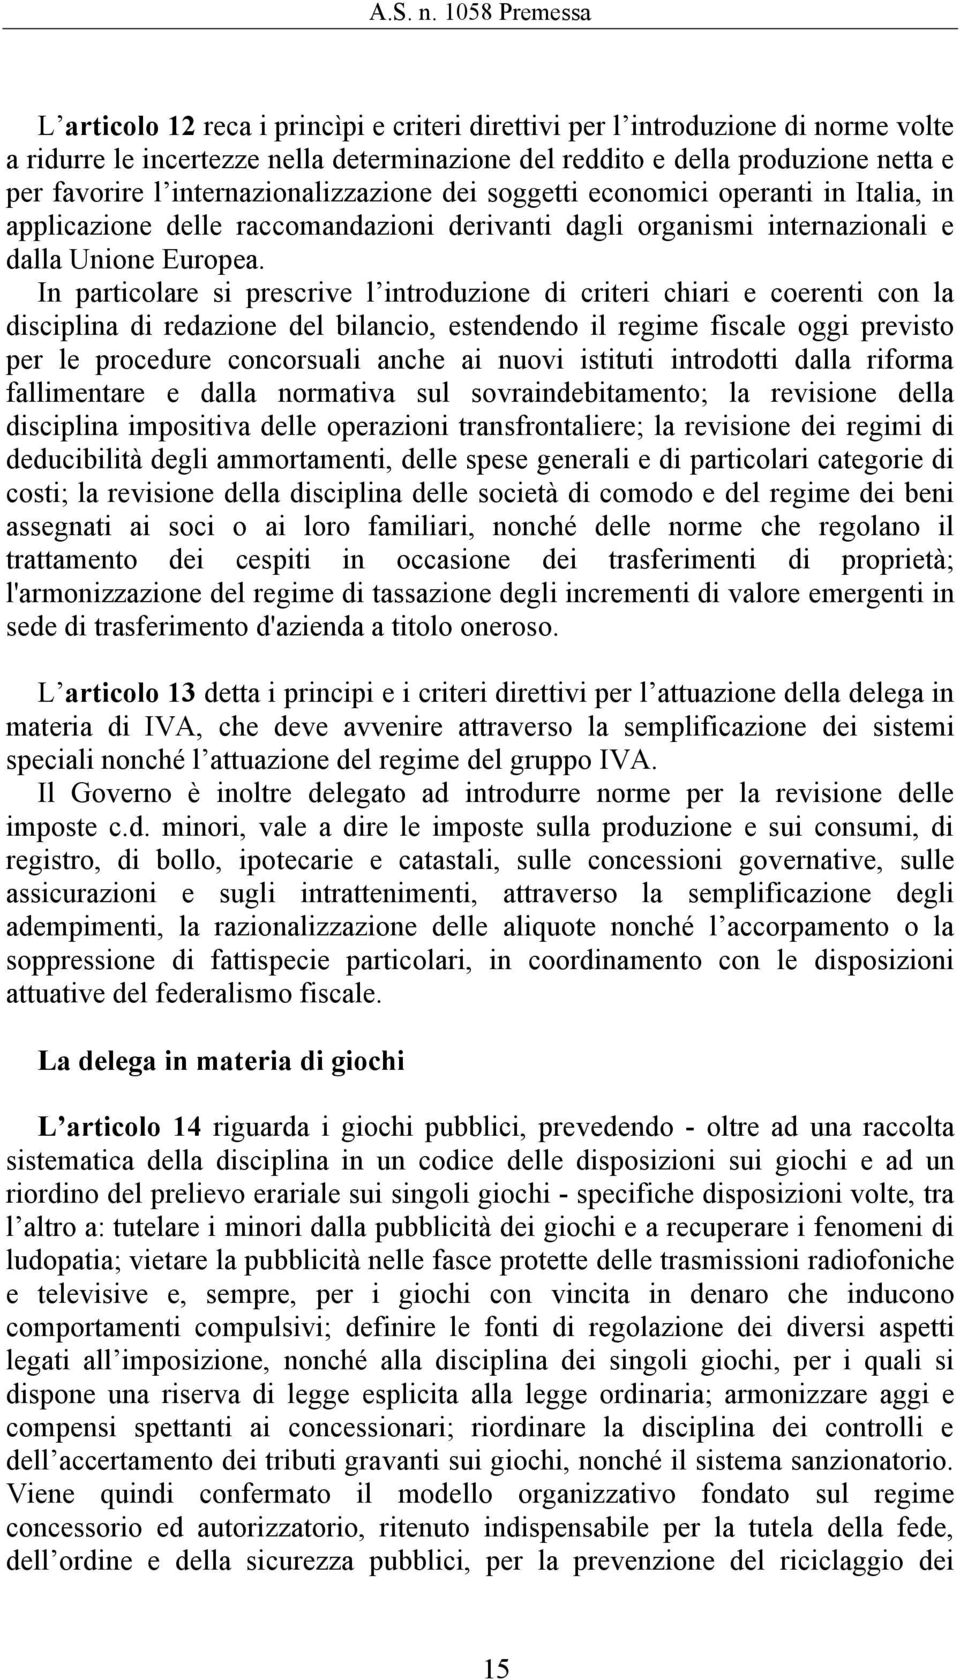 internazionalizzazione dei soggetti economici operanti in Italia, in applicazione delle raccomandazioni derivanti dagli organismi internazionali e dalla Unione Europea.